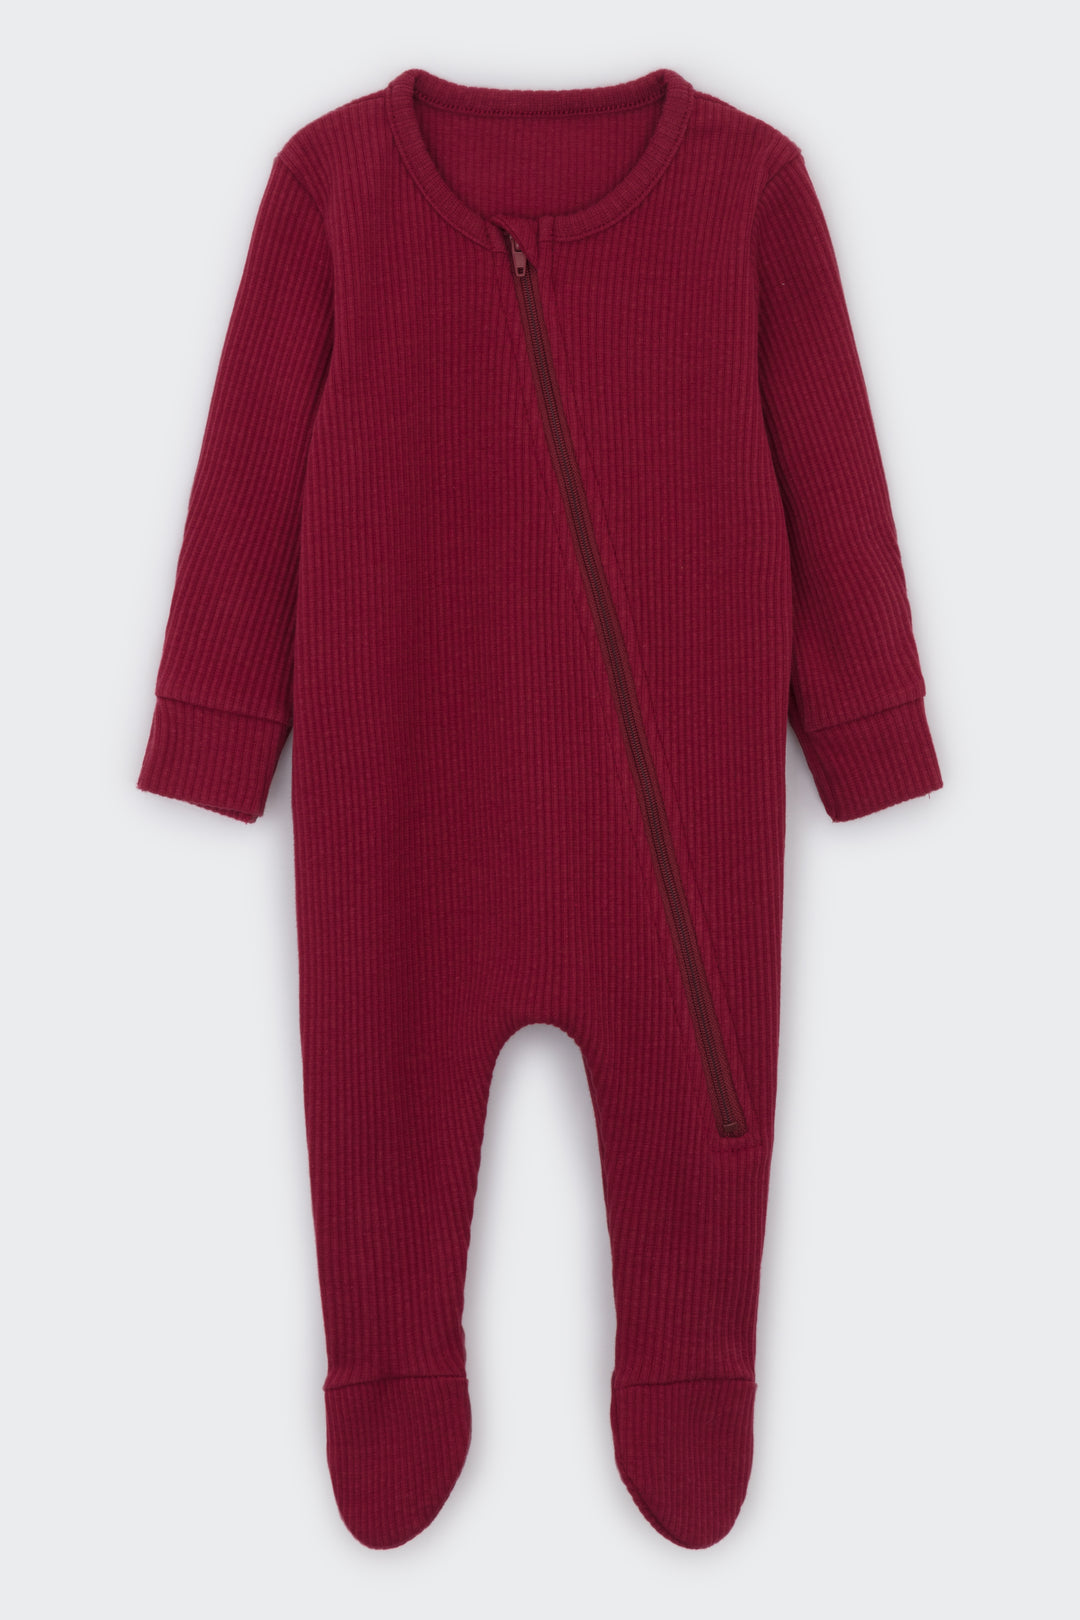 Claret Red Zip Sleepsuit DreamBuy